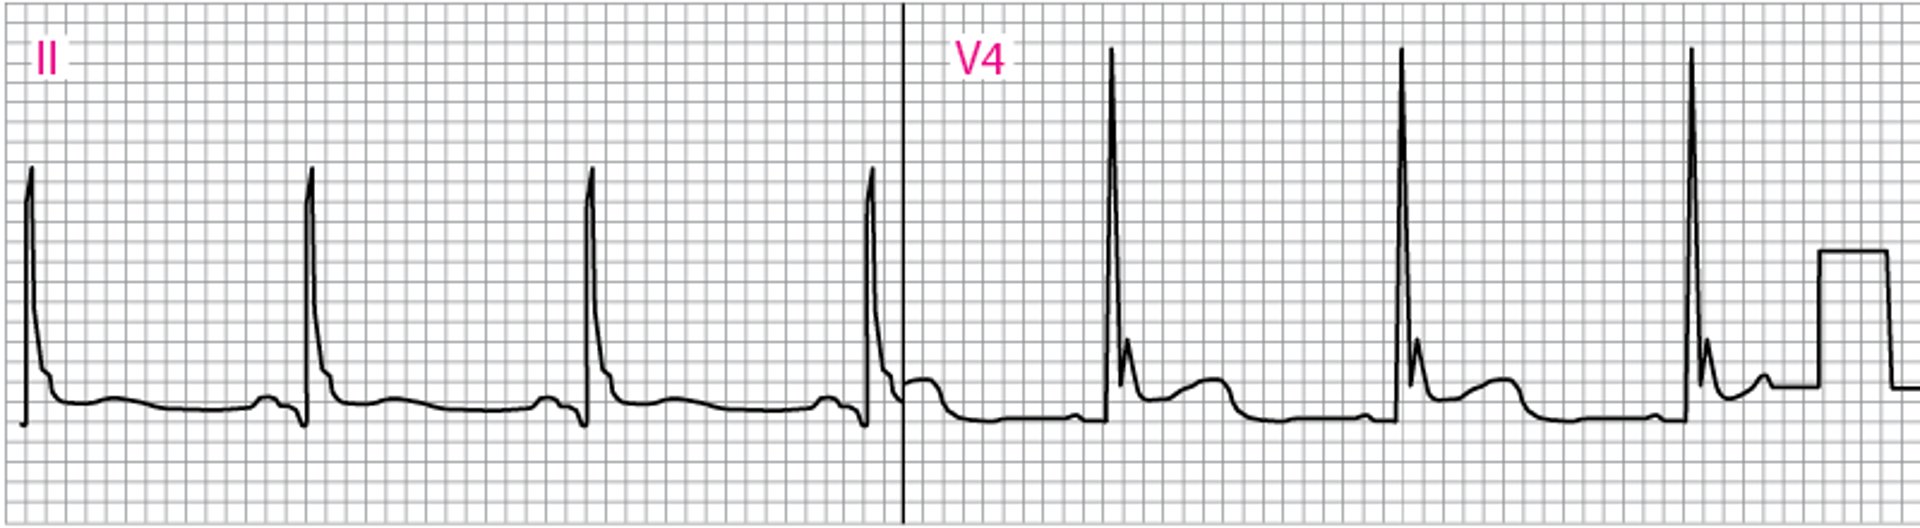 Anomalies de l'ECG montrant une onde J d'Osborn (V4)